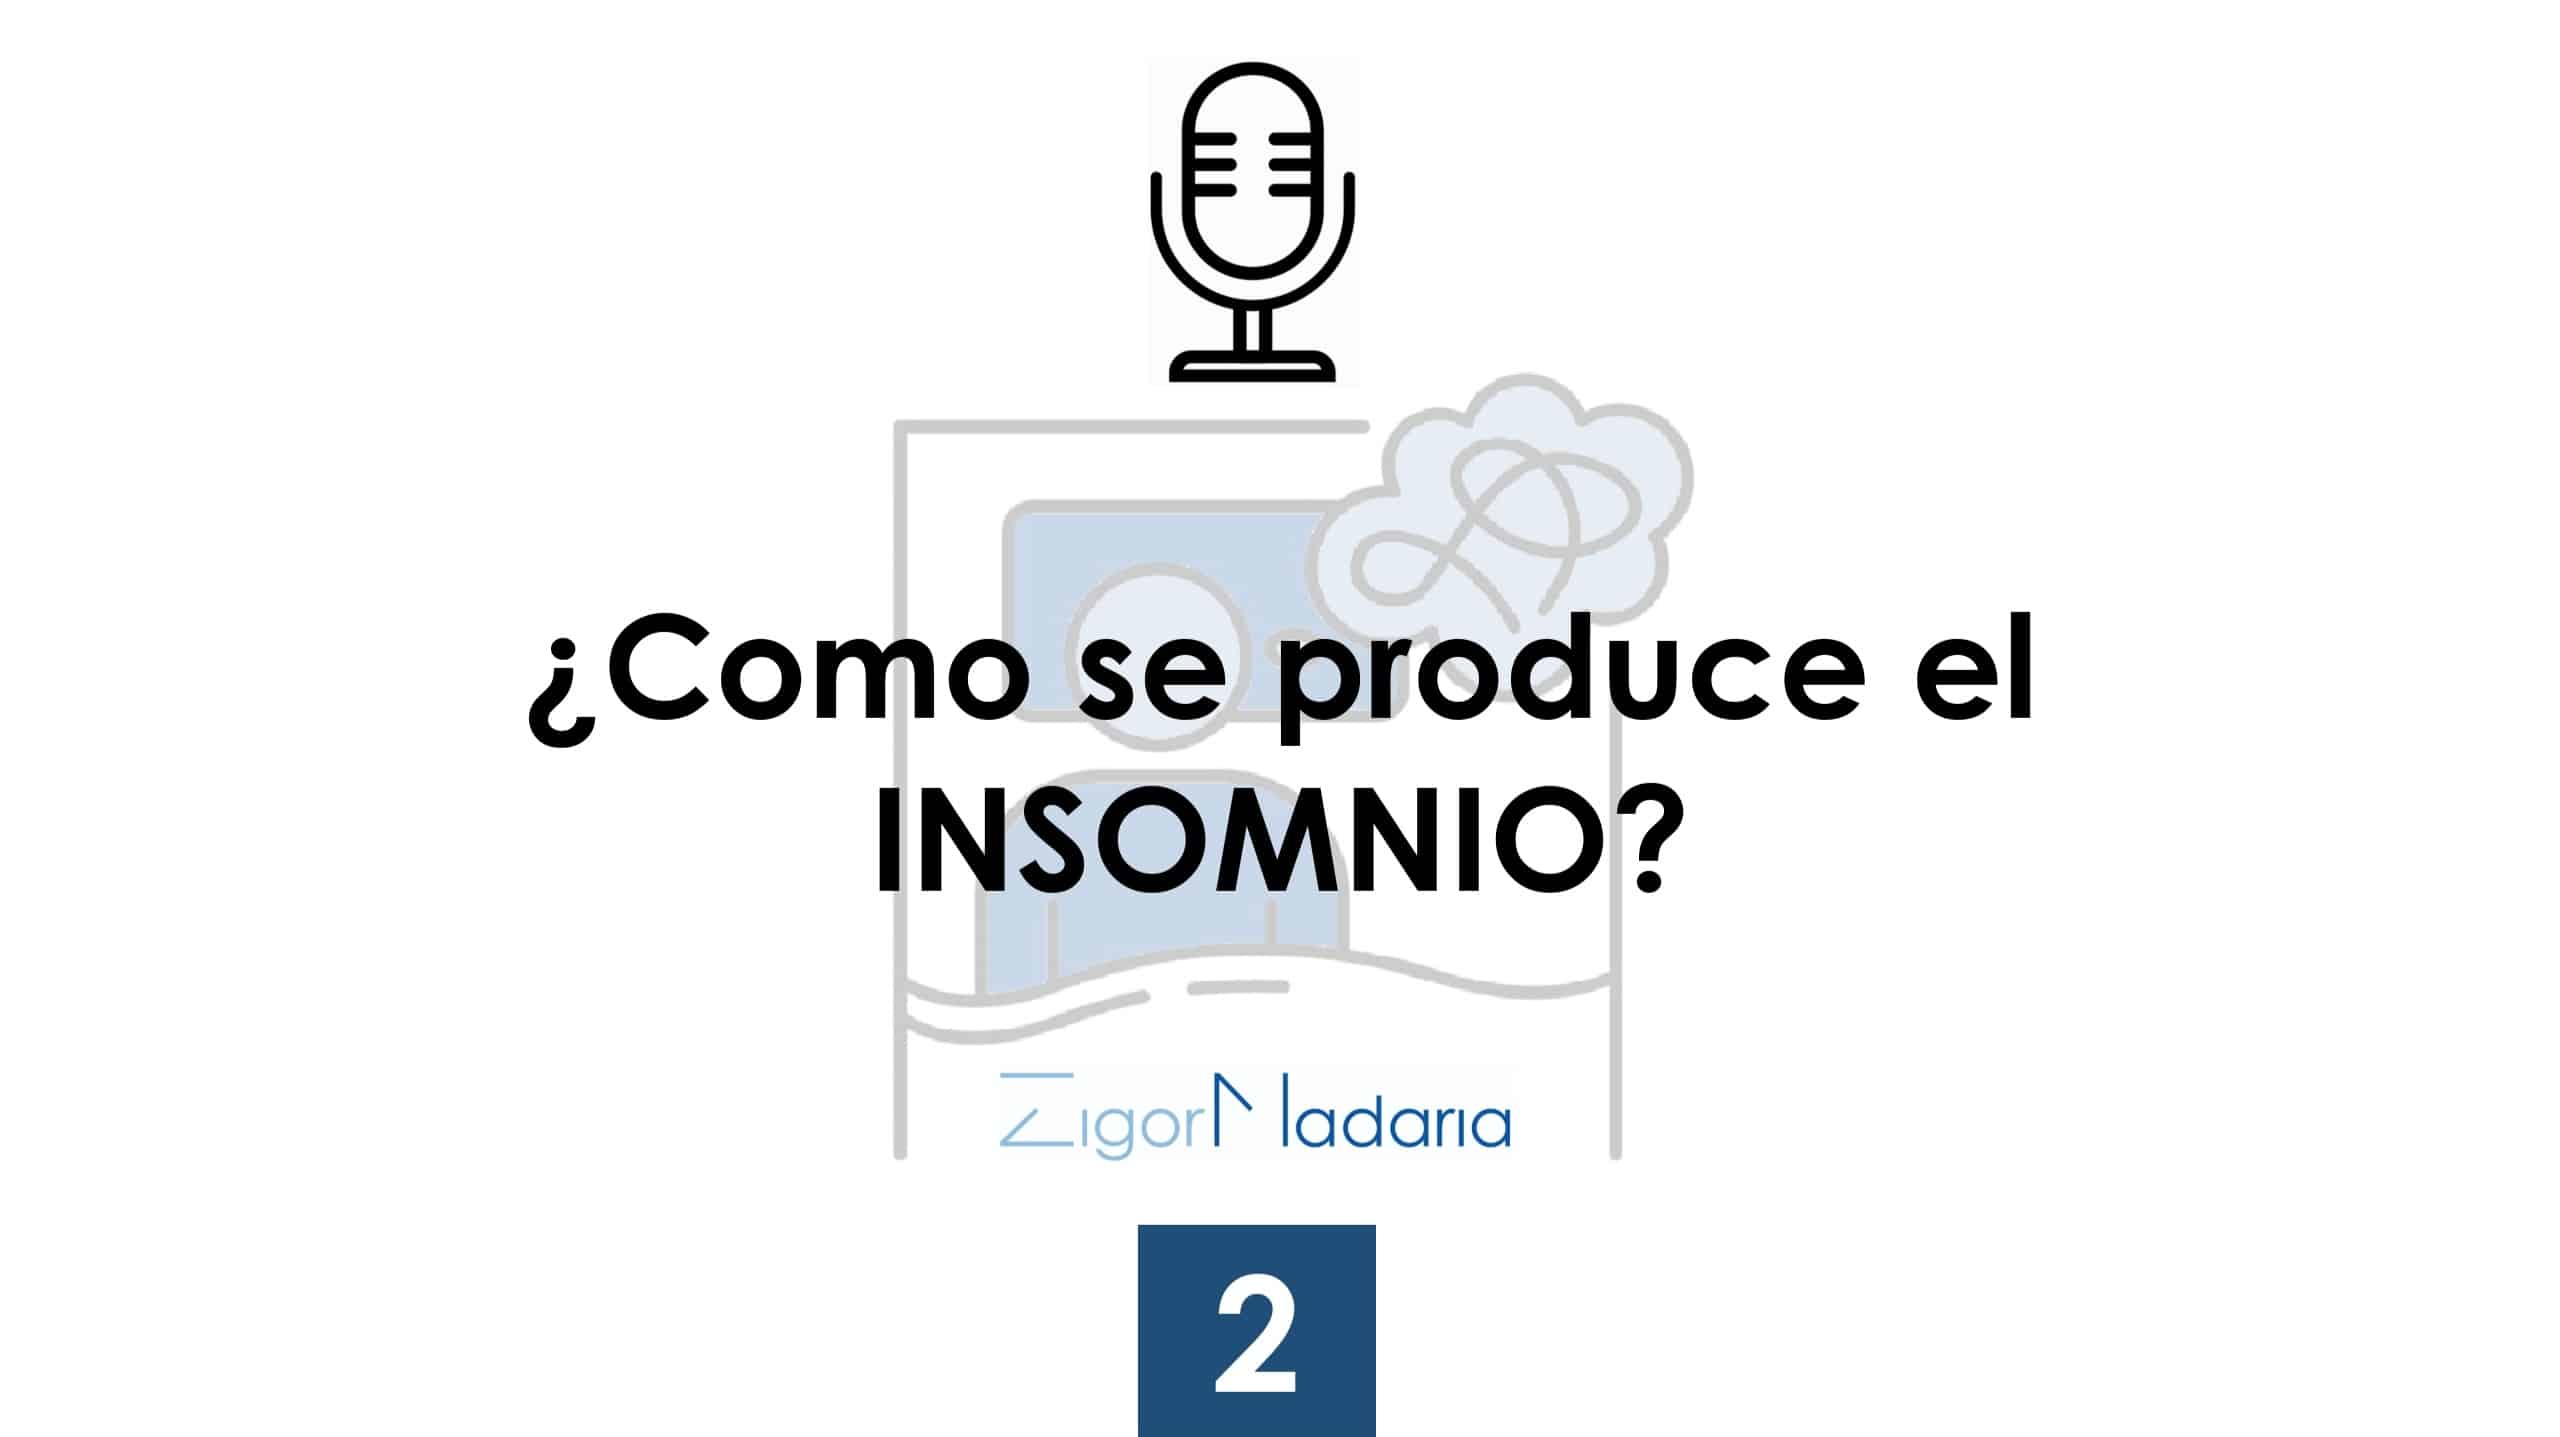 2. ¿Cómo se produce el insomnio?